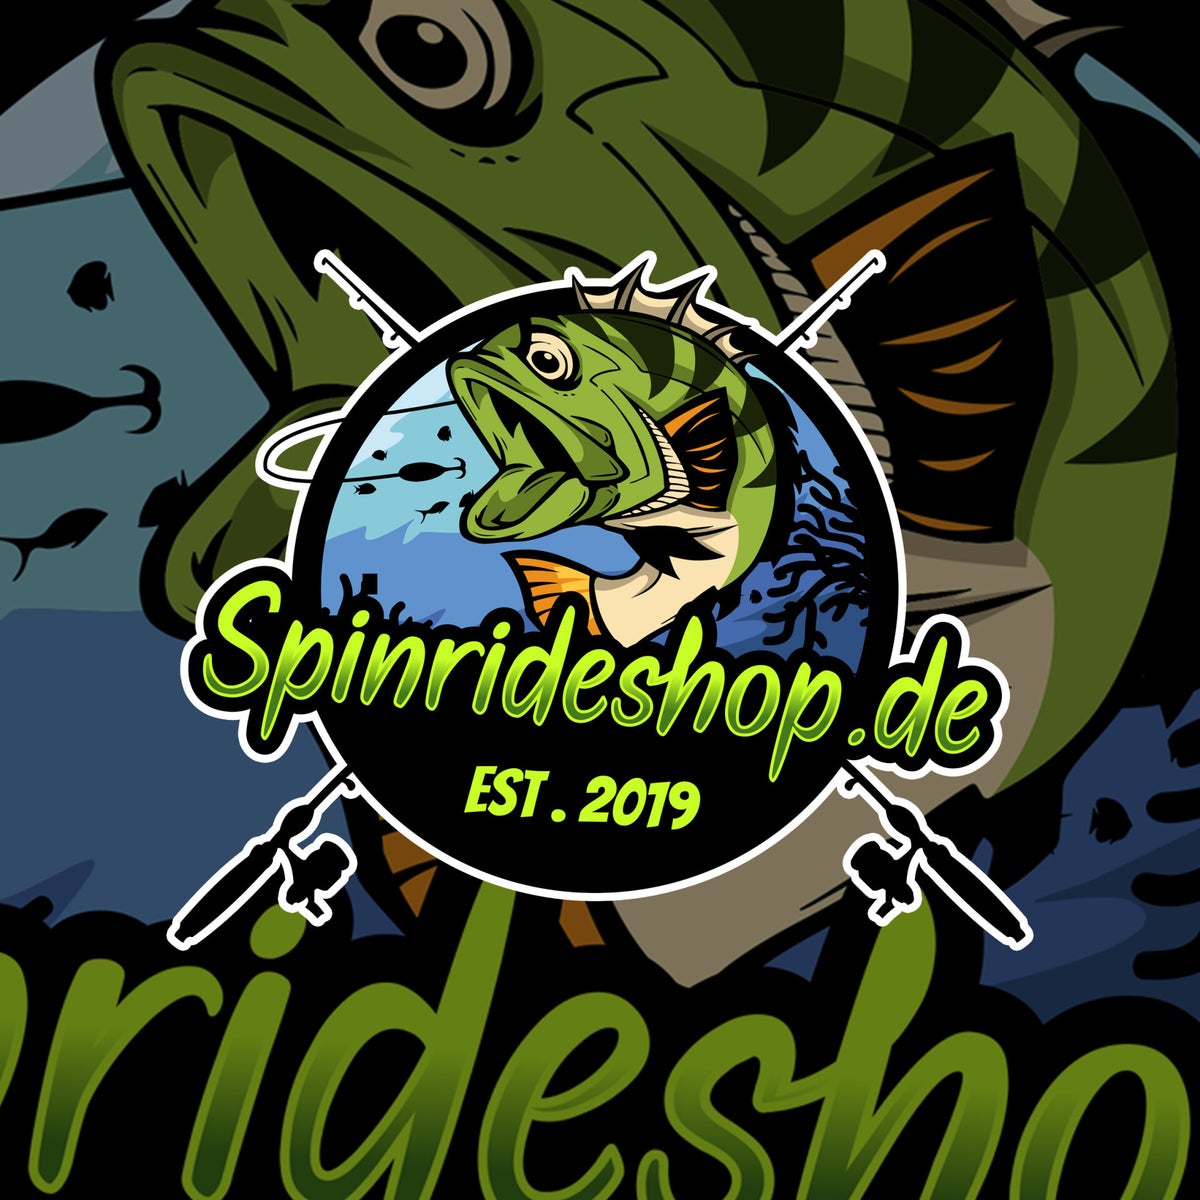 www.spinrideshop.de